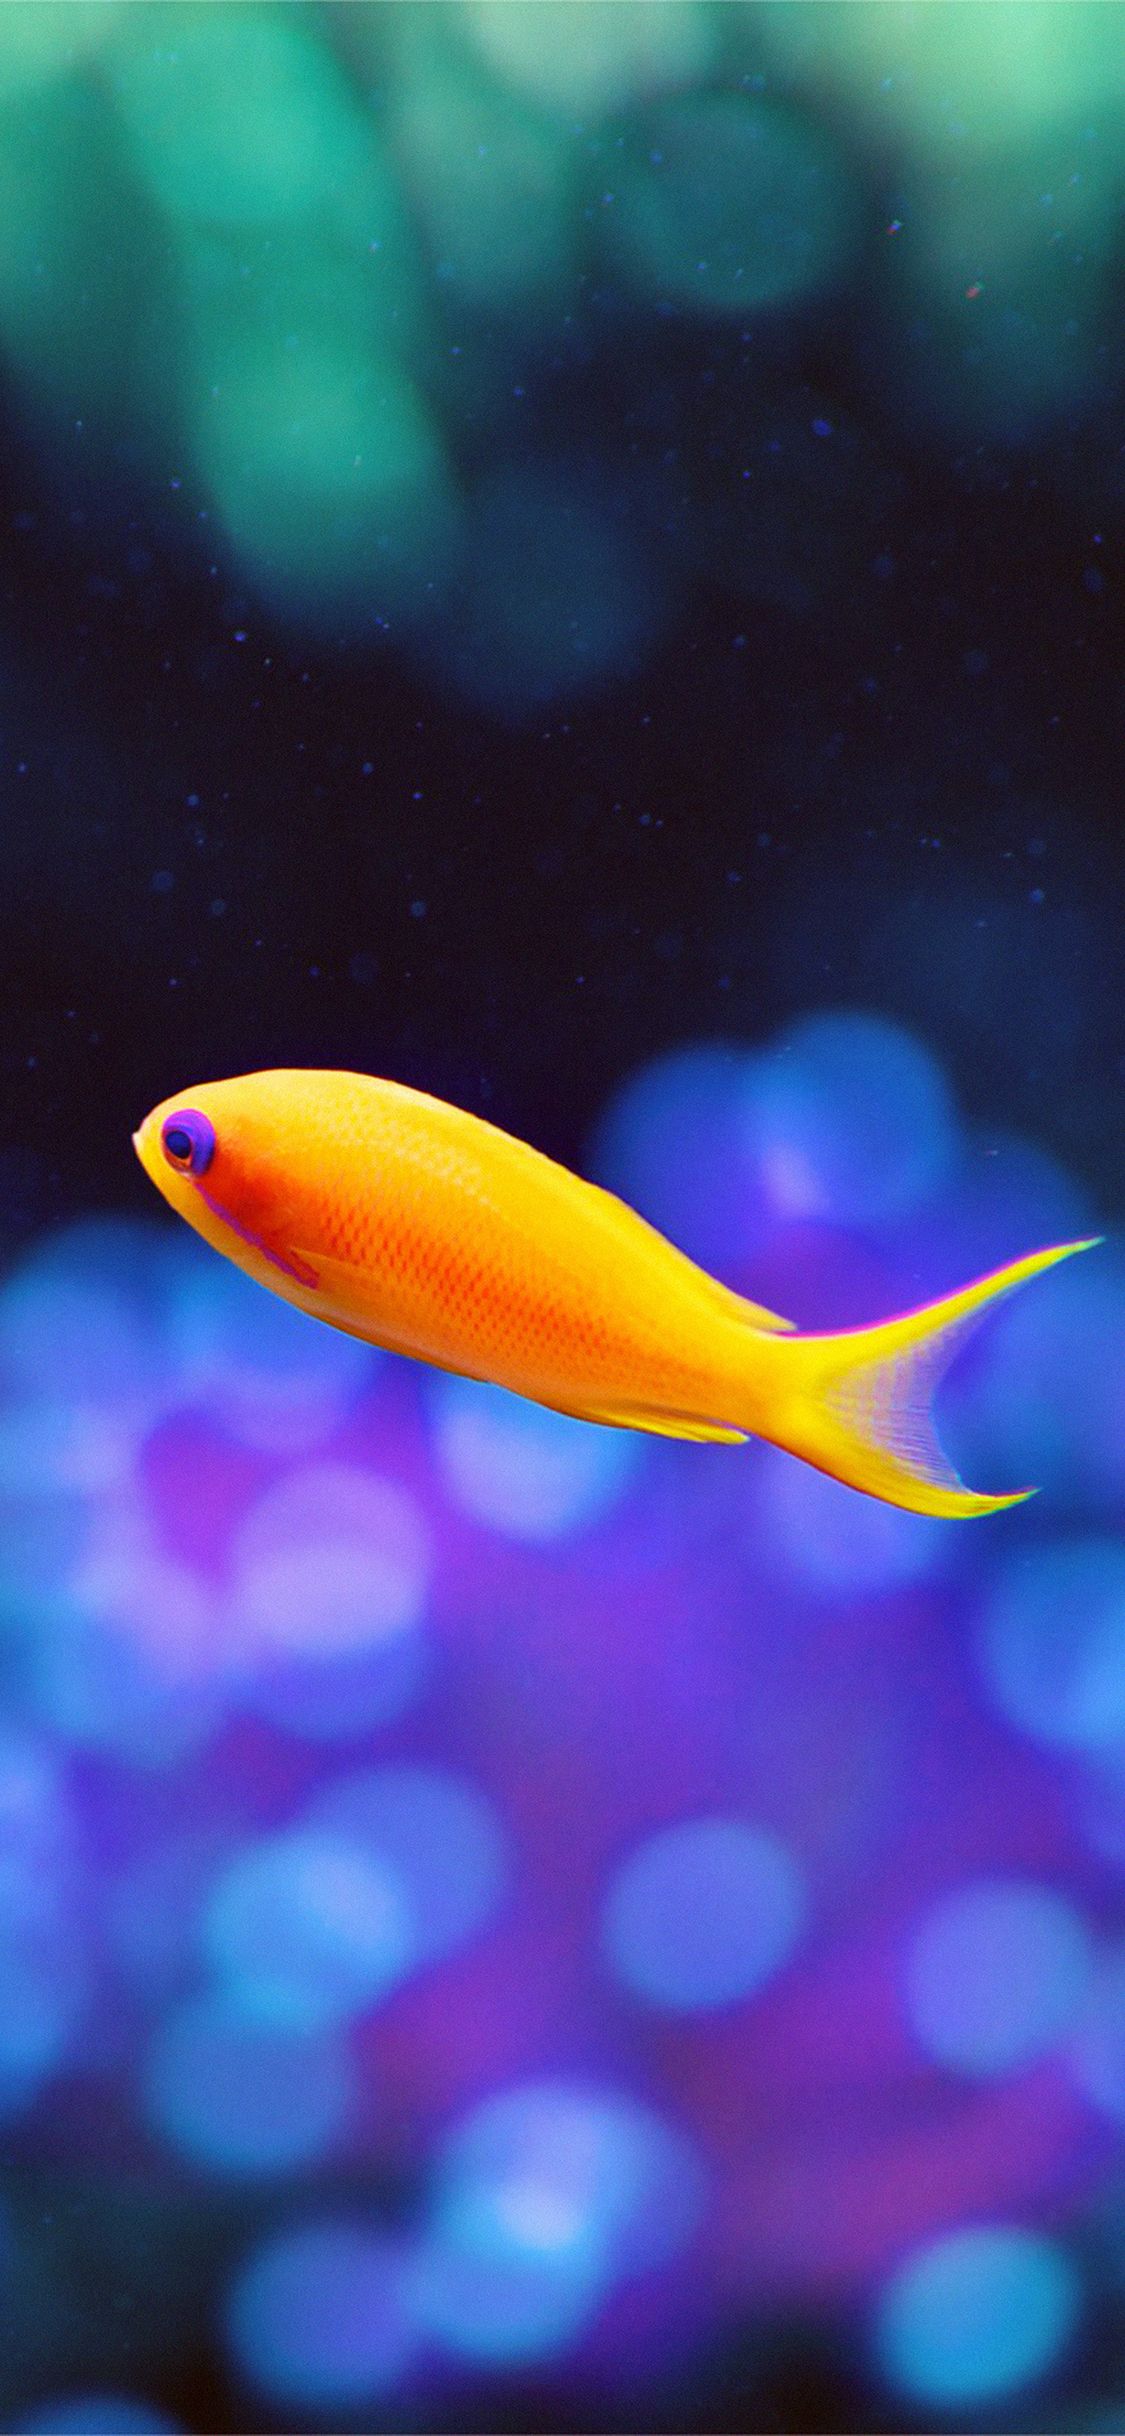 iPhone X wallpaper. cute fish nemo ocean sea animal nature